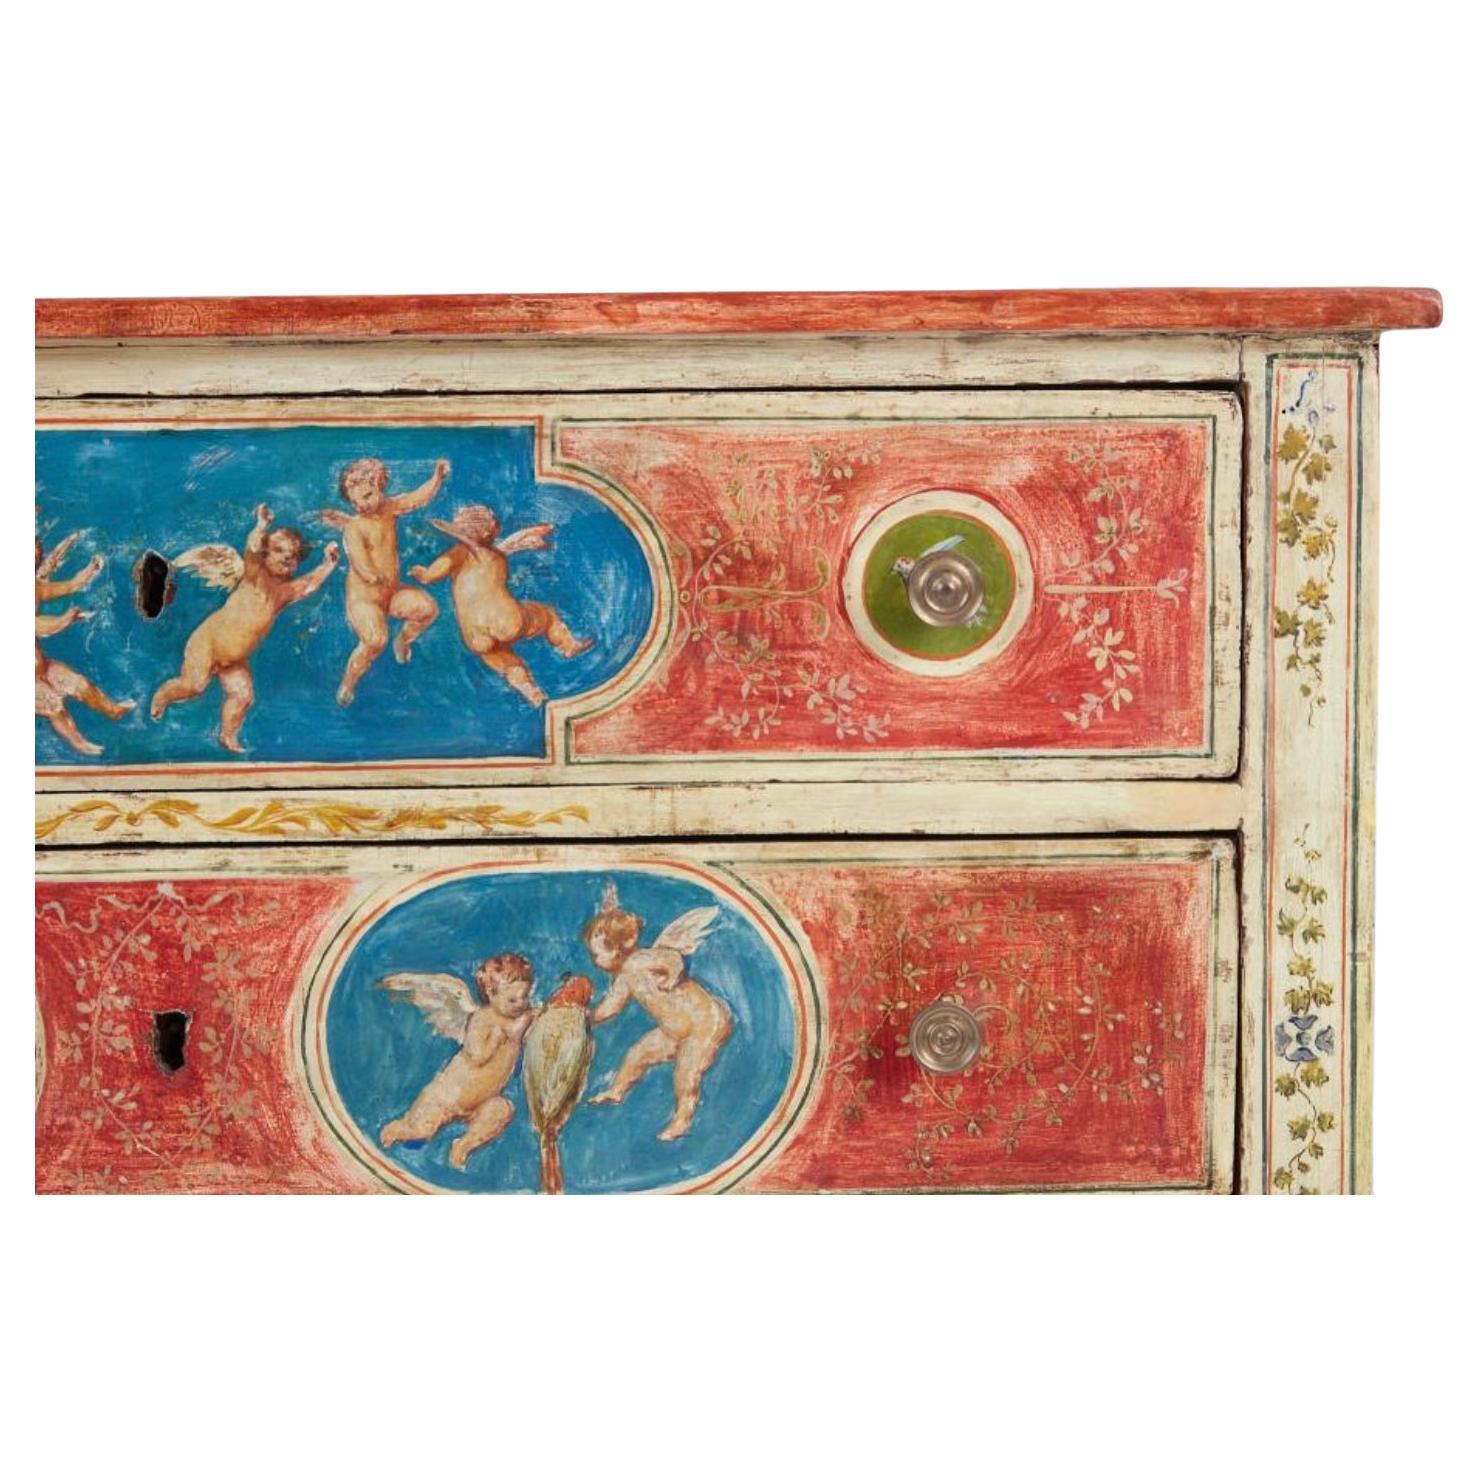 Italienische Kommode im neoklassischen Stil des späten 18. Jahrhunderts mit polychromem Dekor. Die drei großen Schubladen sind in Rot und Blau mit Engeln und Vögeln in der Mitte der Schubladenfronten und auf der Mitte der Oberseite/Seiten der